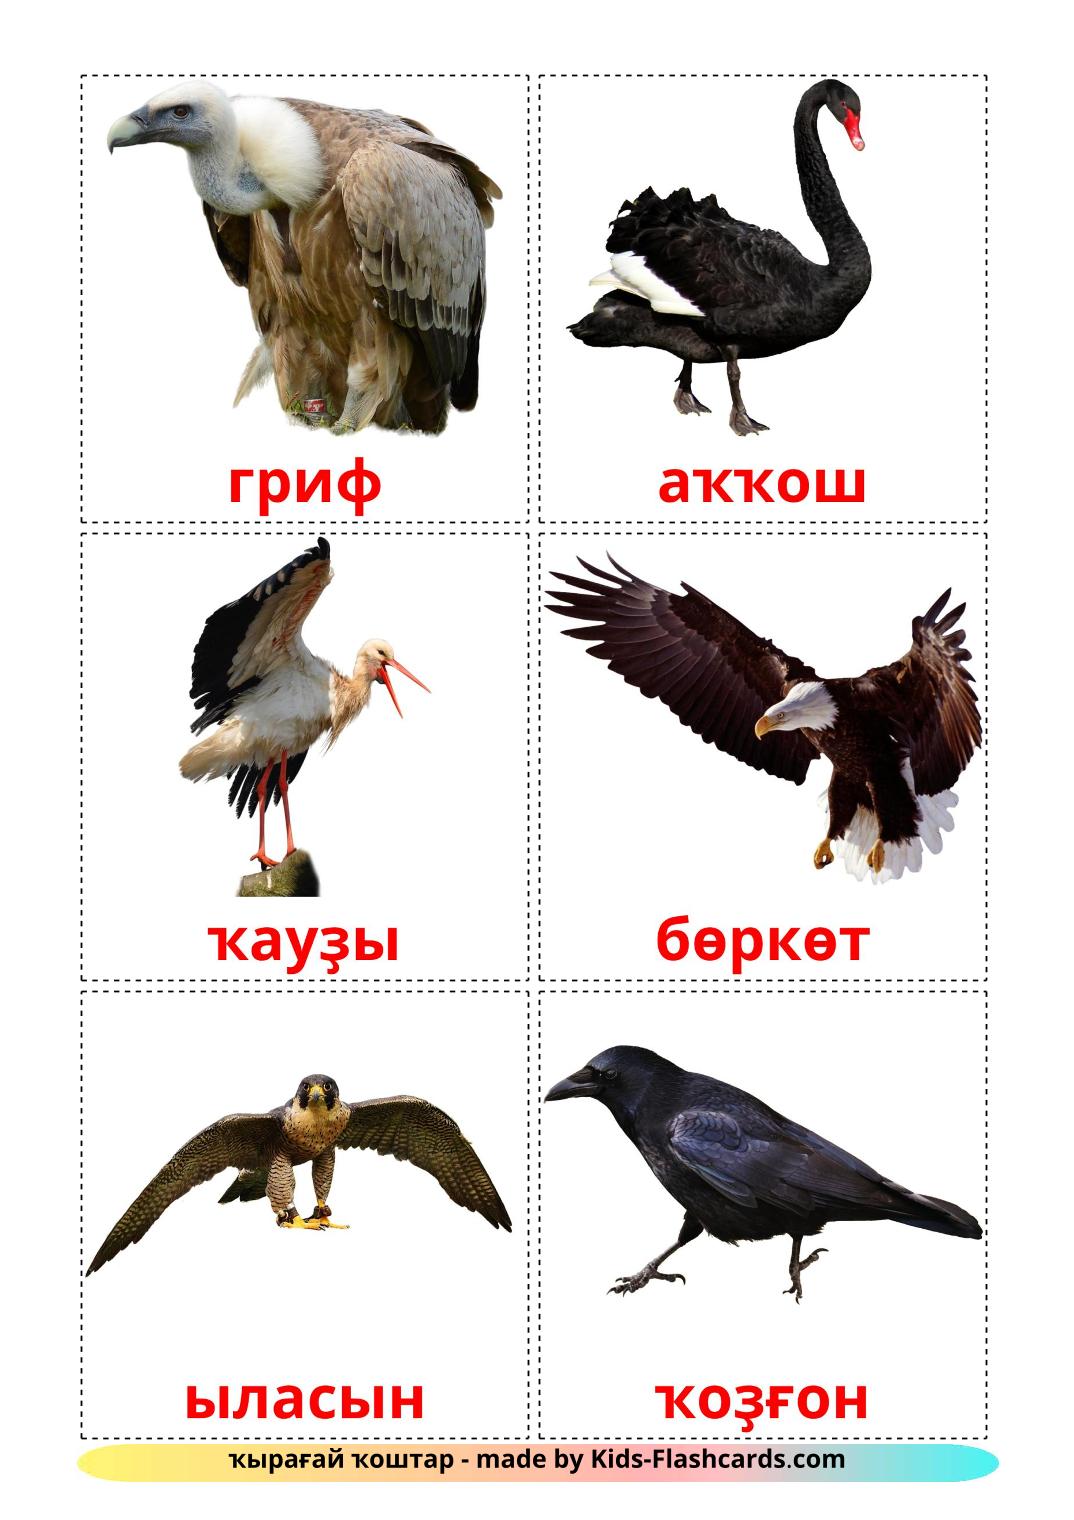 Pájaros salvajes - 18 fichas de brashkir para imprimir gratis 